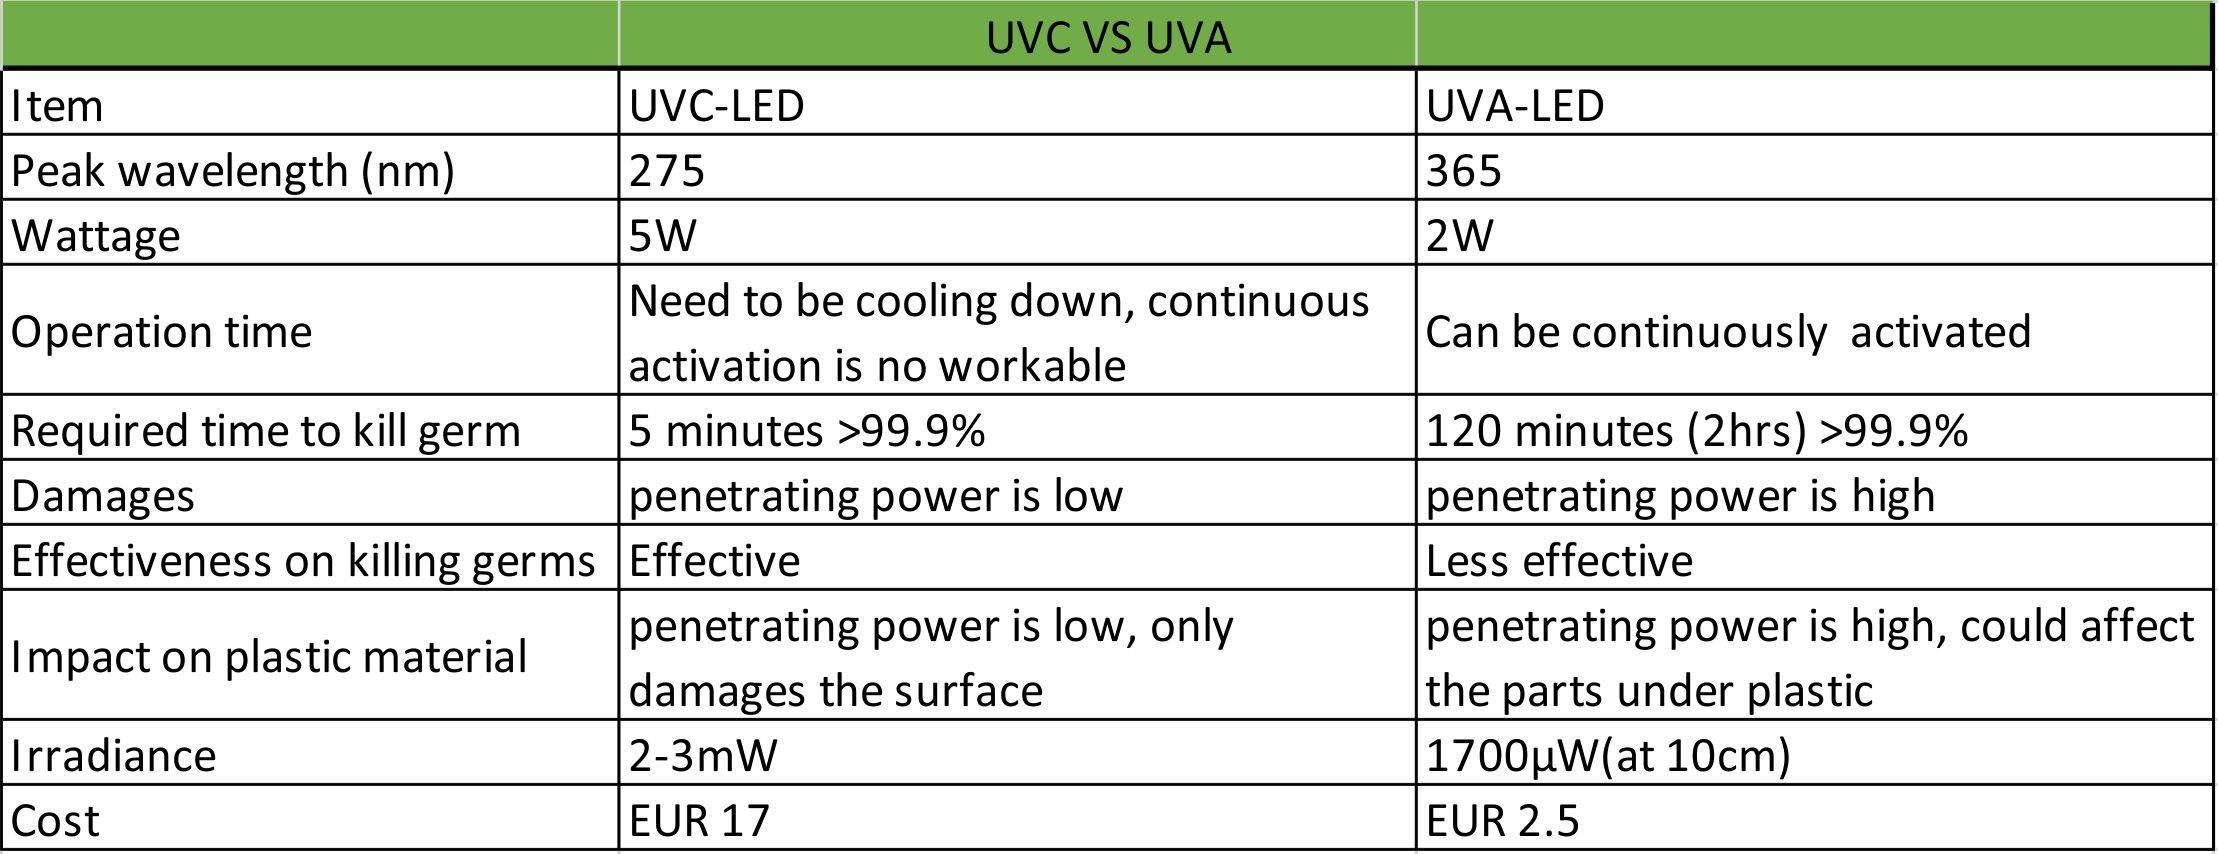 Vergelijking van UVC- en UVA-LED-lampen